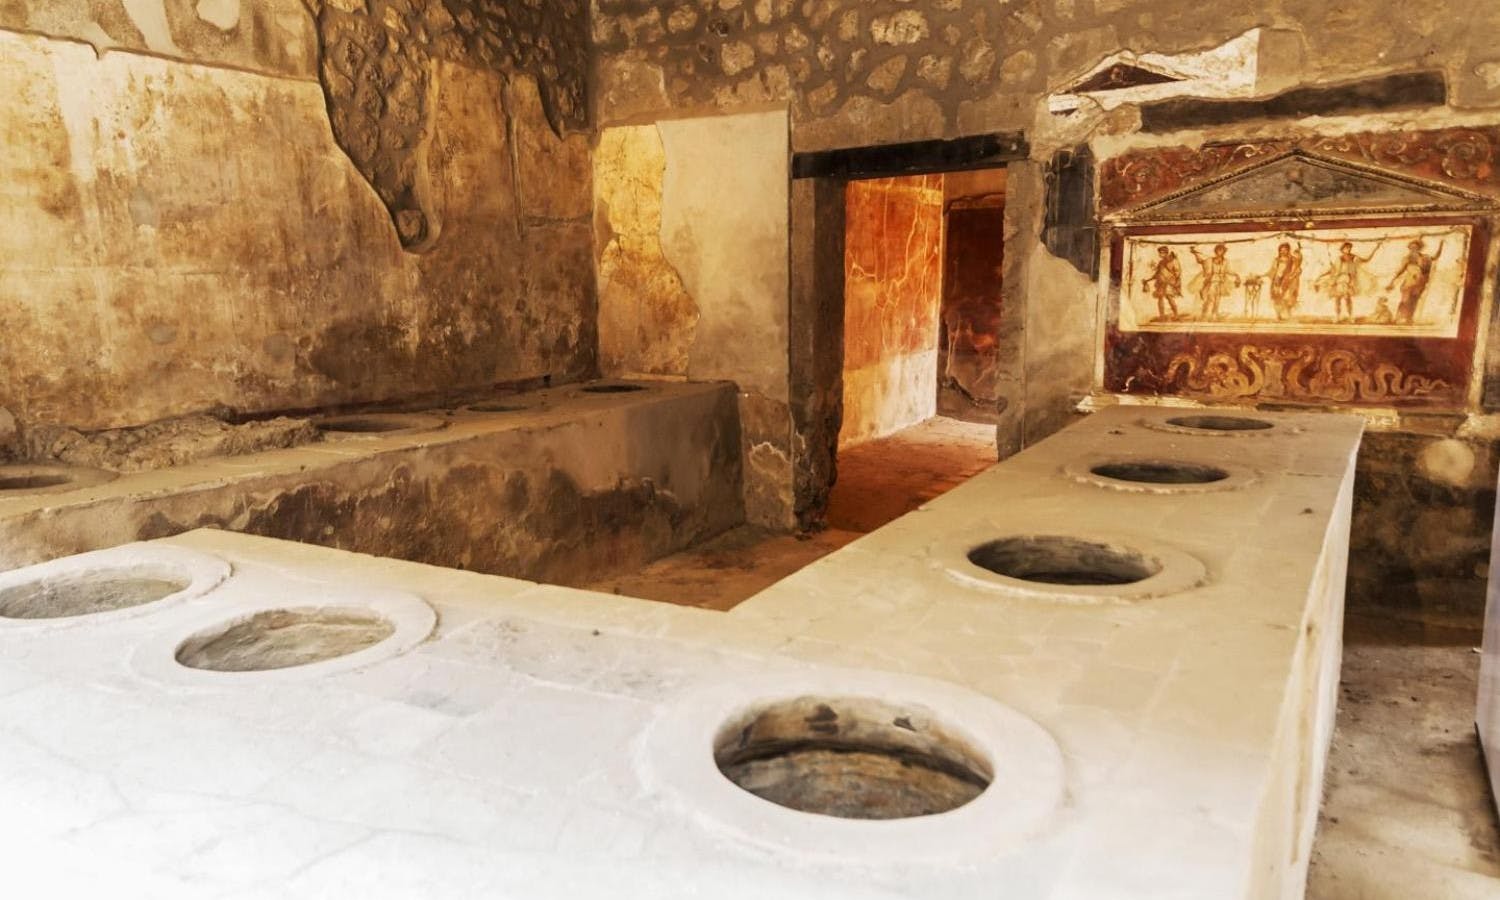 Unesco jewels: Pompeii and Naples tour